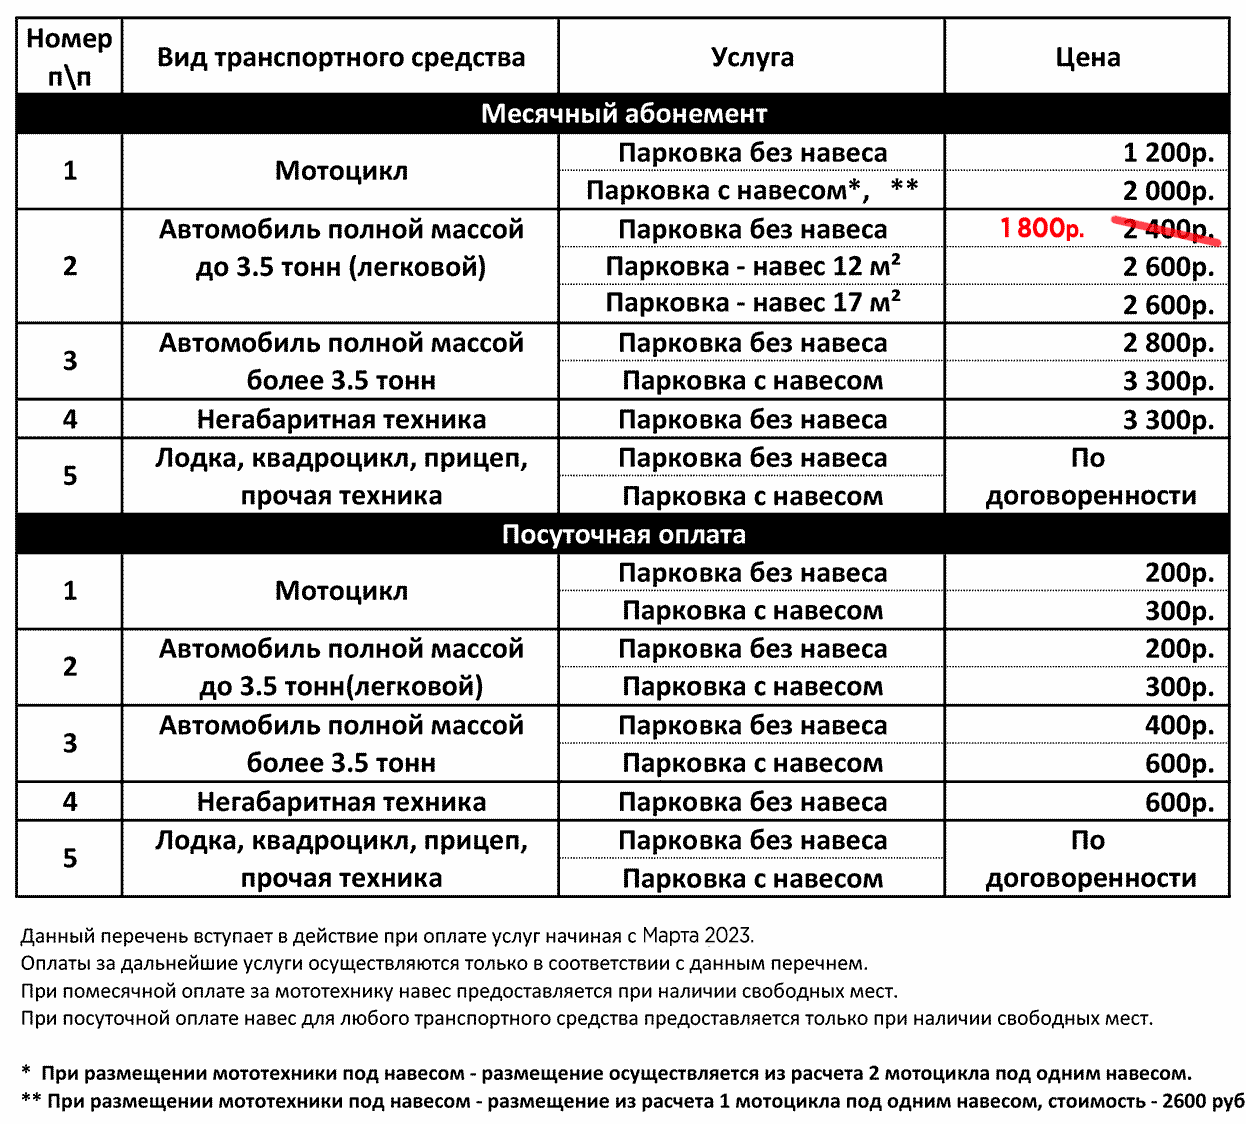 Стоимость парковки, Серпухов 2023